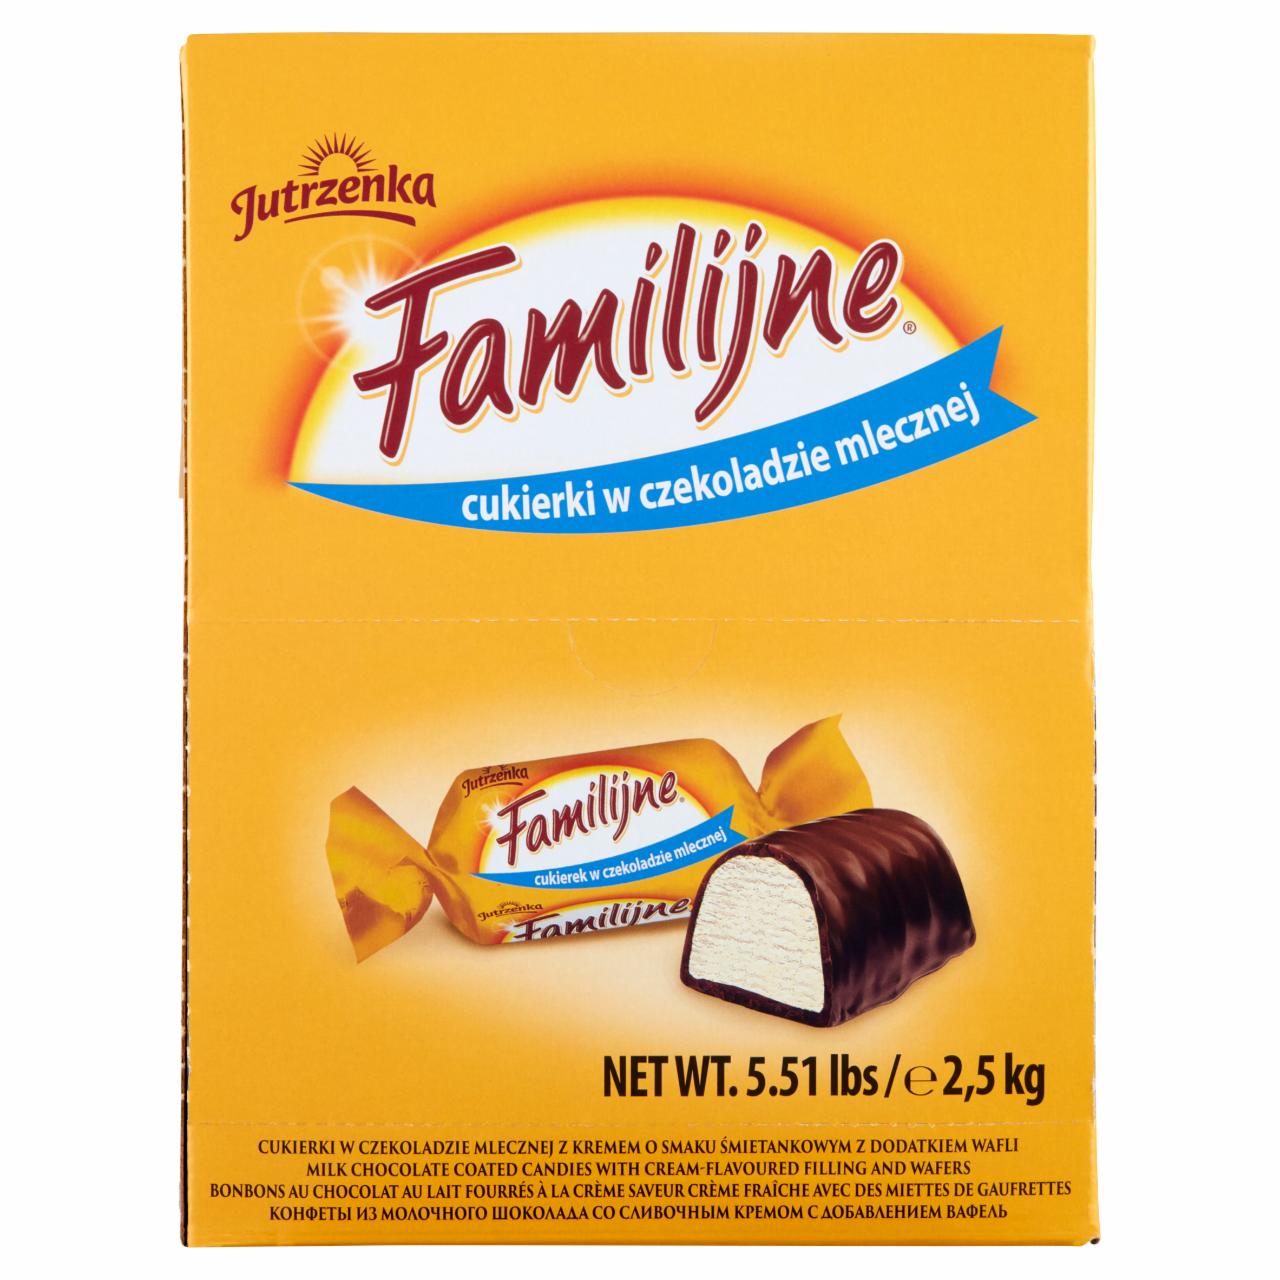 Zdjęcia - Familijne Cukierki w czekoladzie mlecznej z kremem o smaku śmietankowym z dodatkiem wafli 2,5 kg